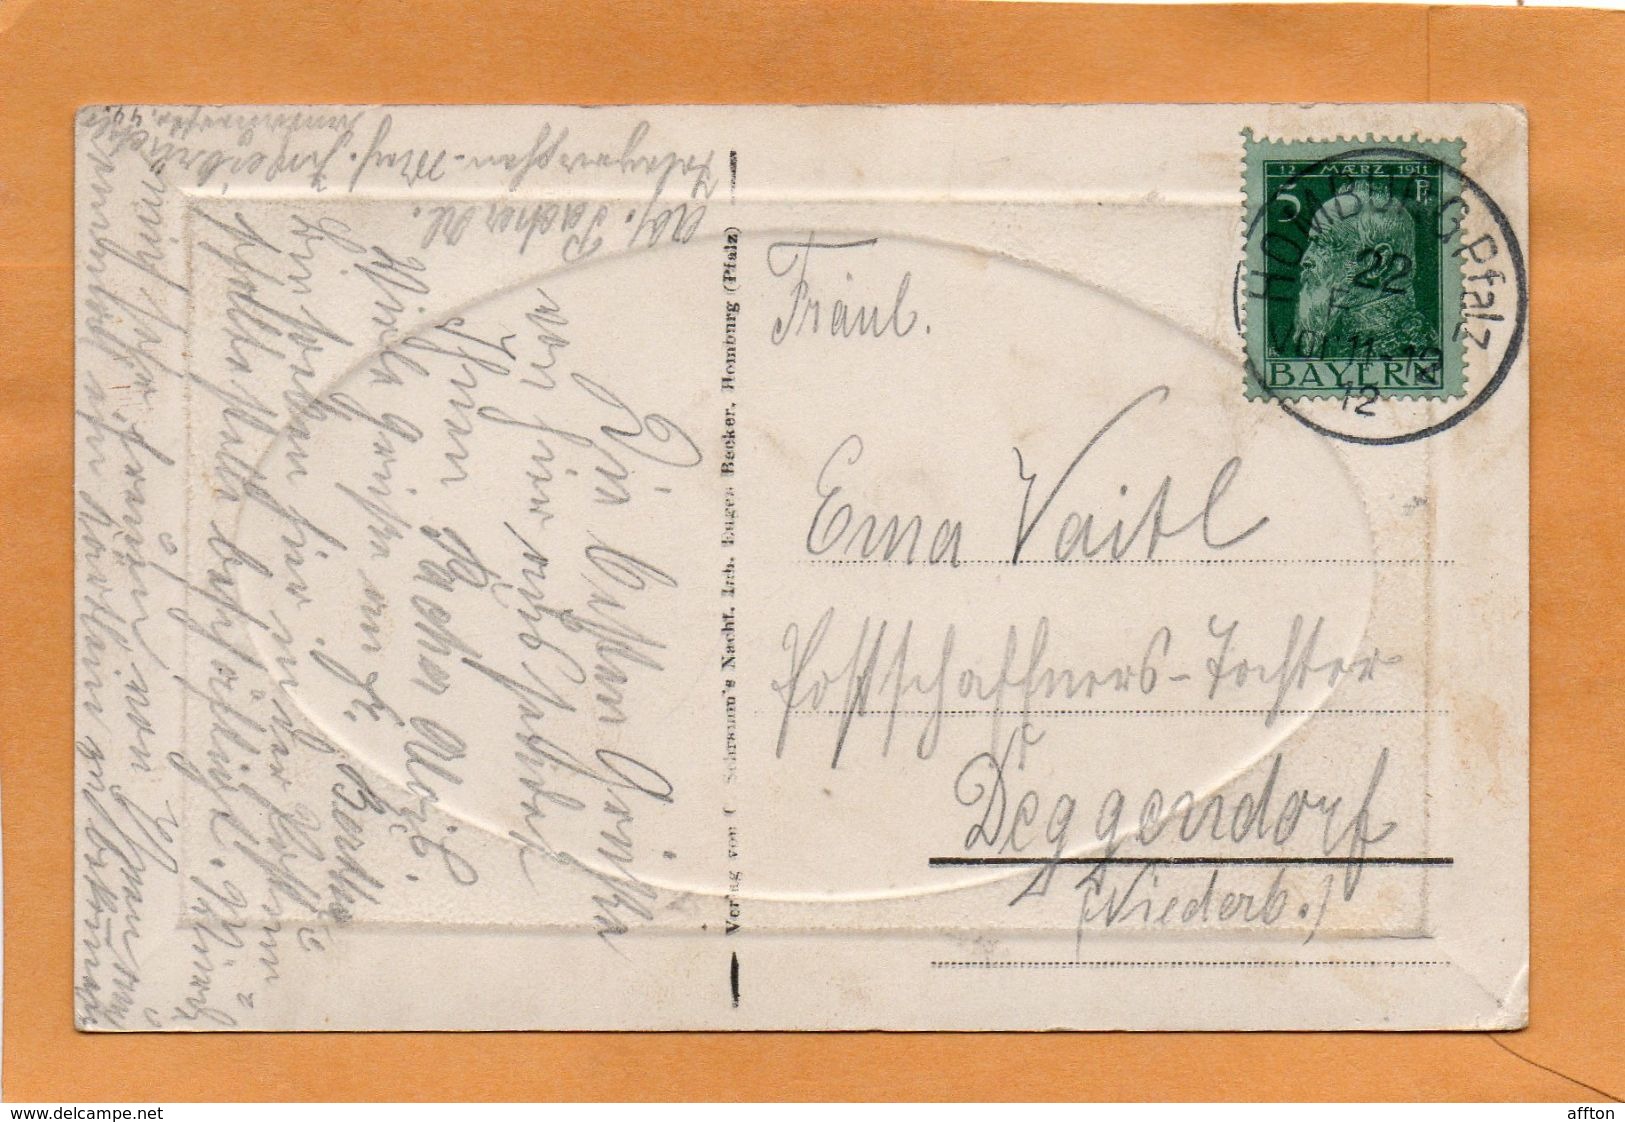 Homburg Germany 1907  Postcard - Saarpfalz-Kreis